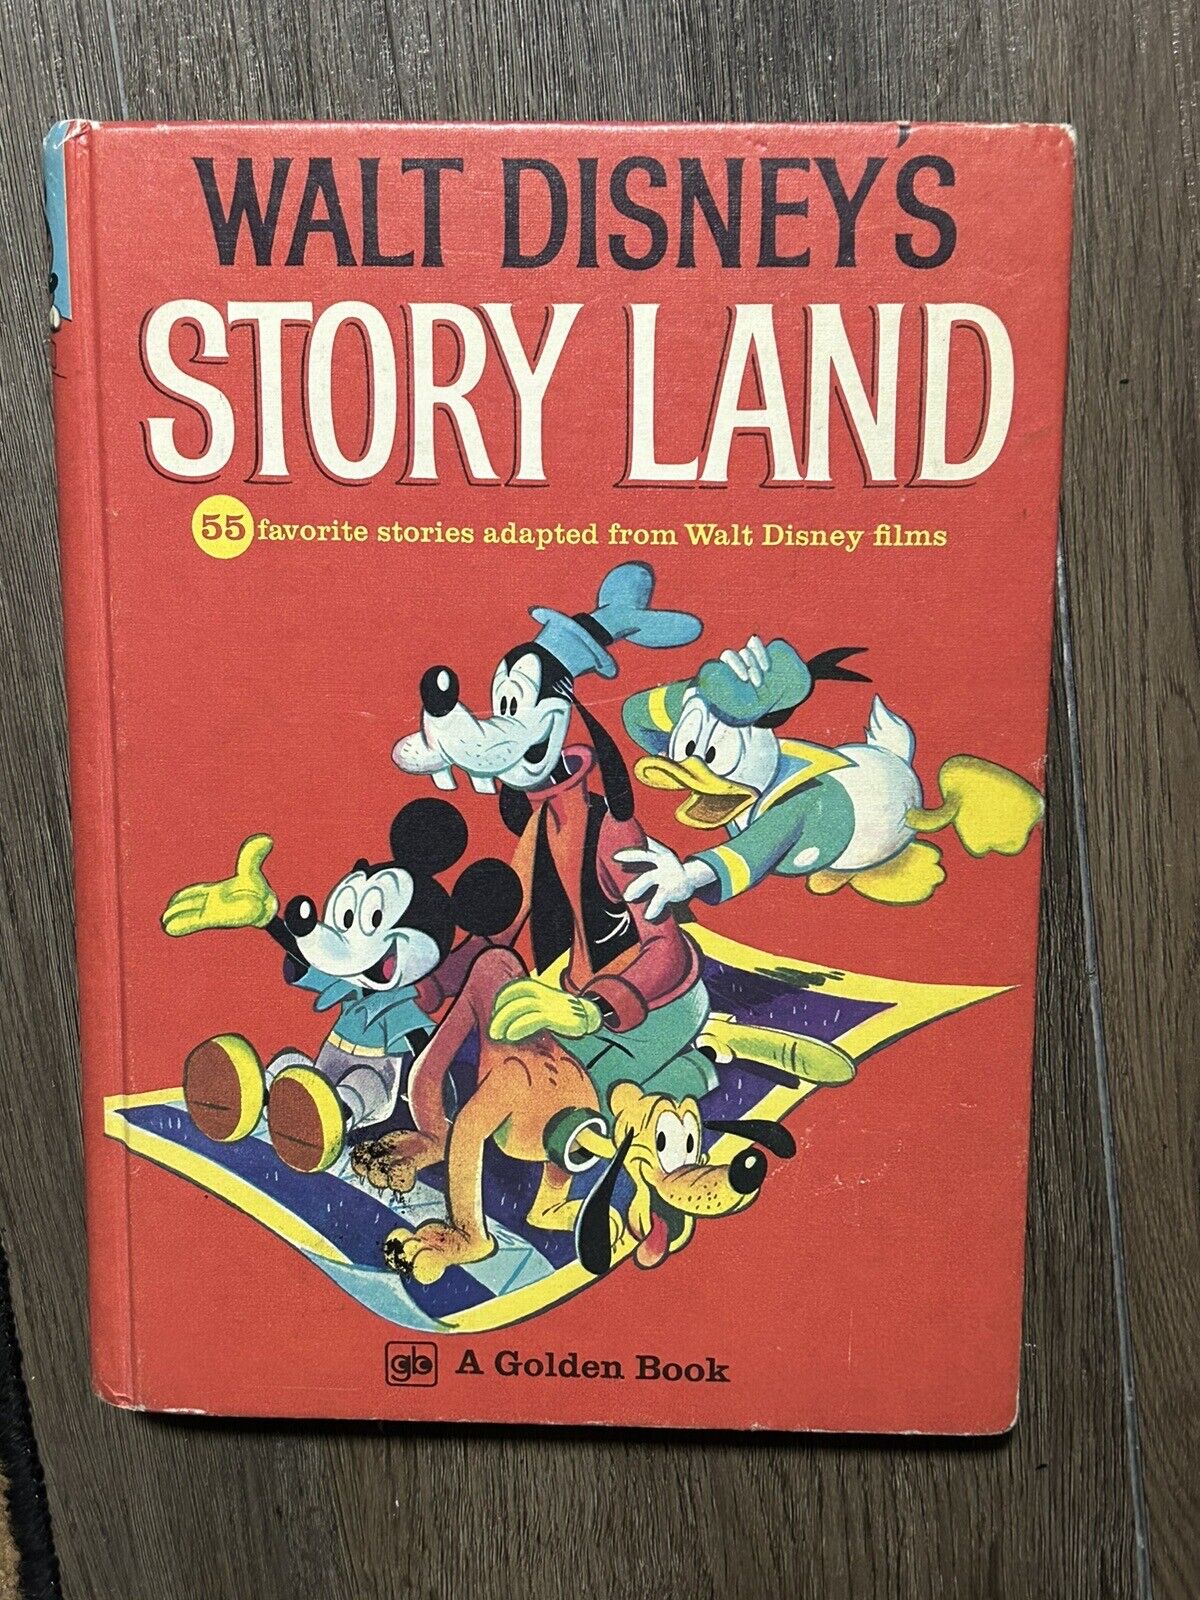 VINTAGE WALT DISNEY STORY LAND BOOK GOLDEN BOOK 1962 COPYRIGHT HARDCOVER